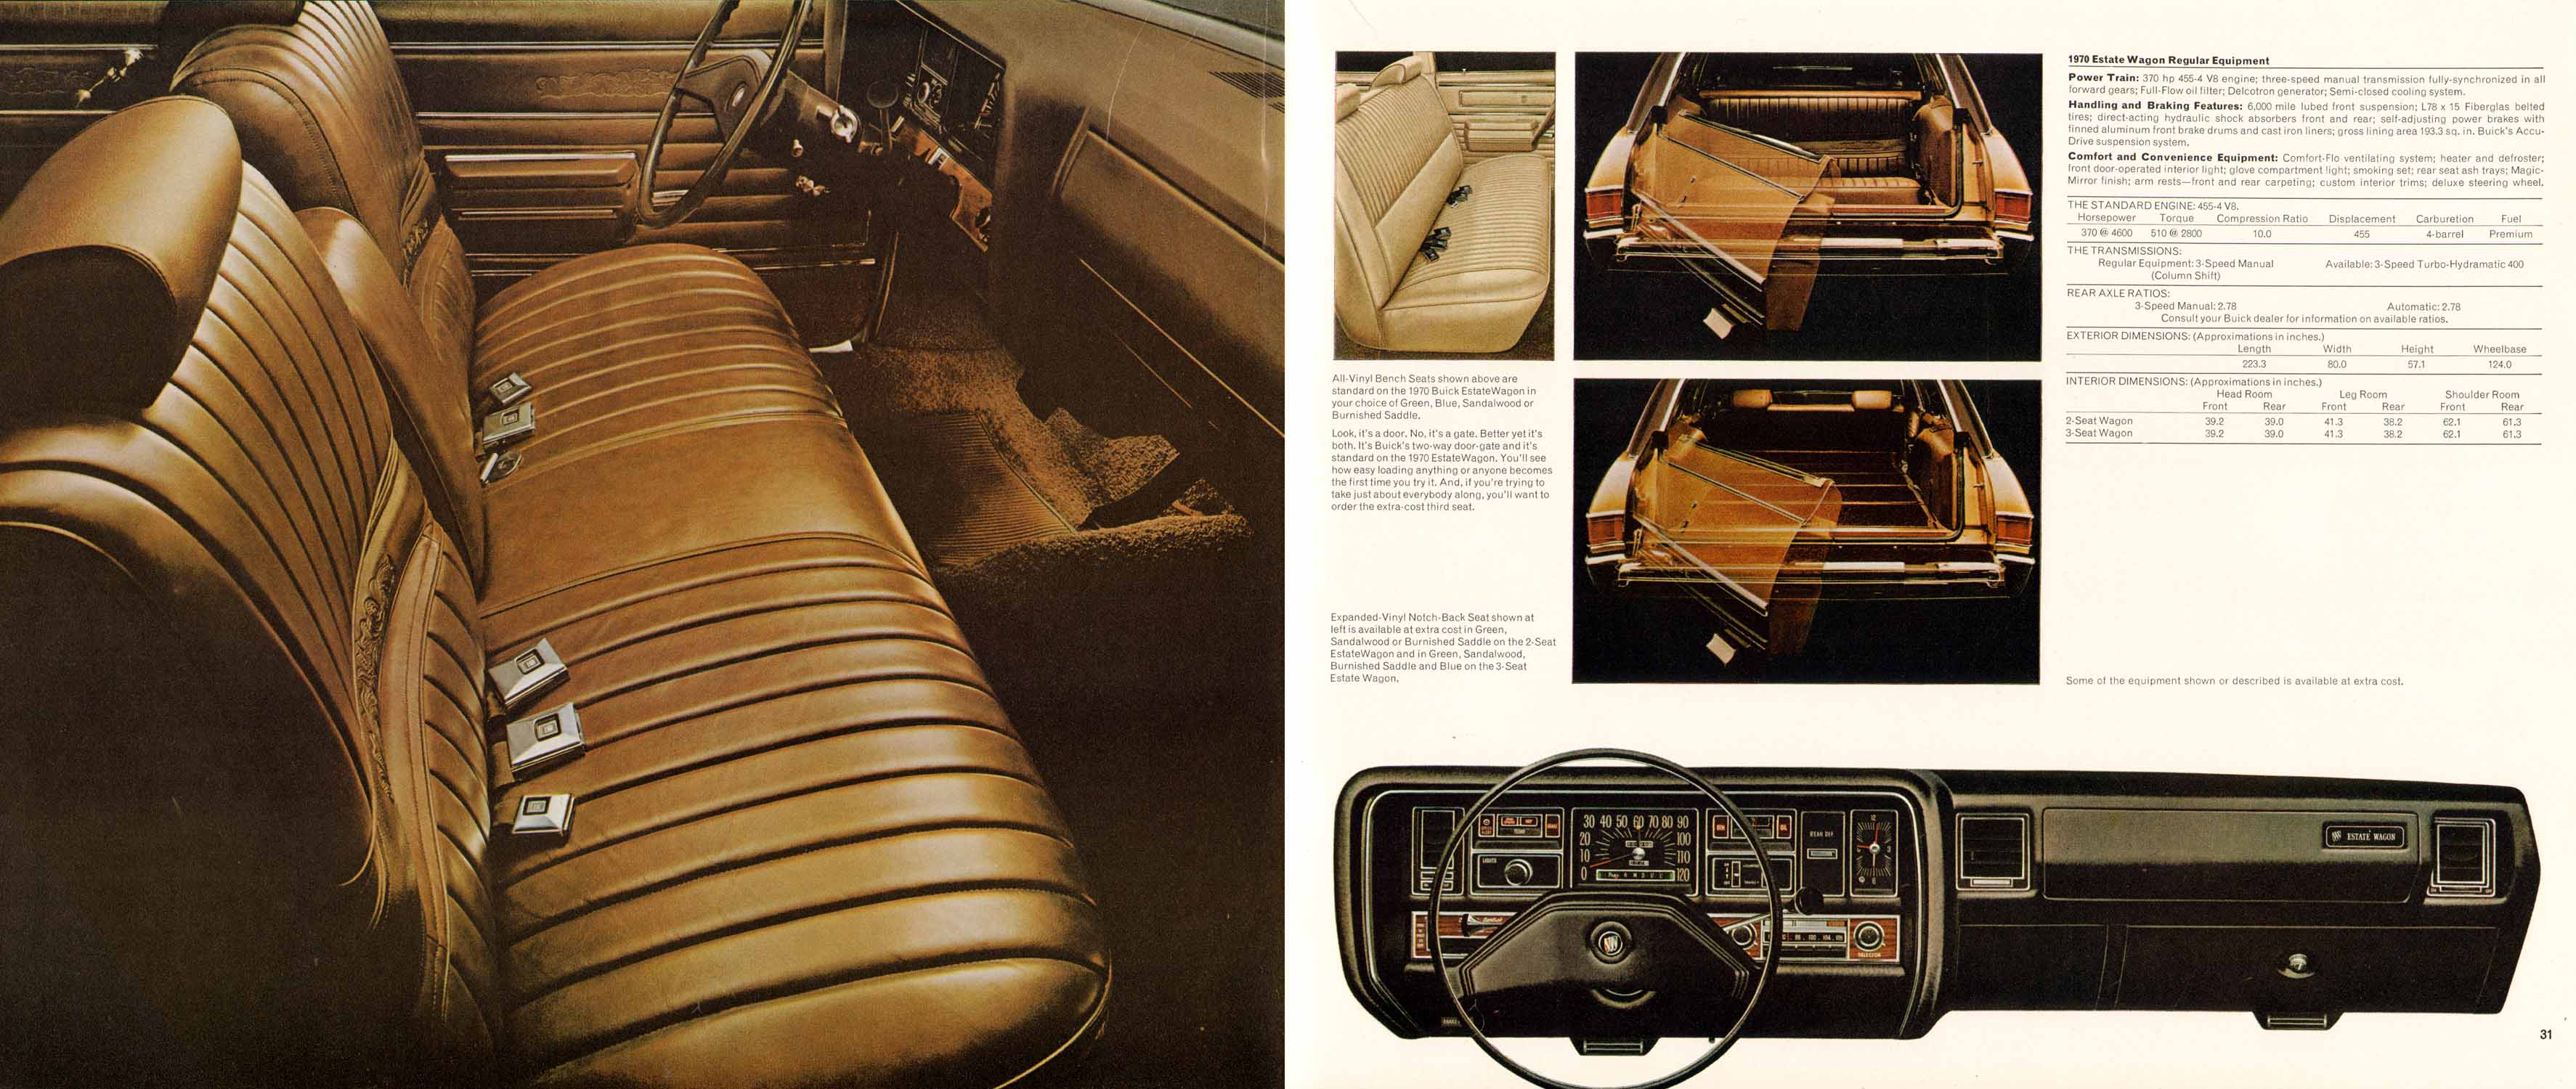 1970 Buick Full Line-30-31